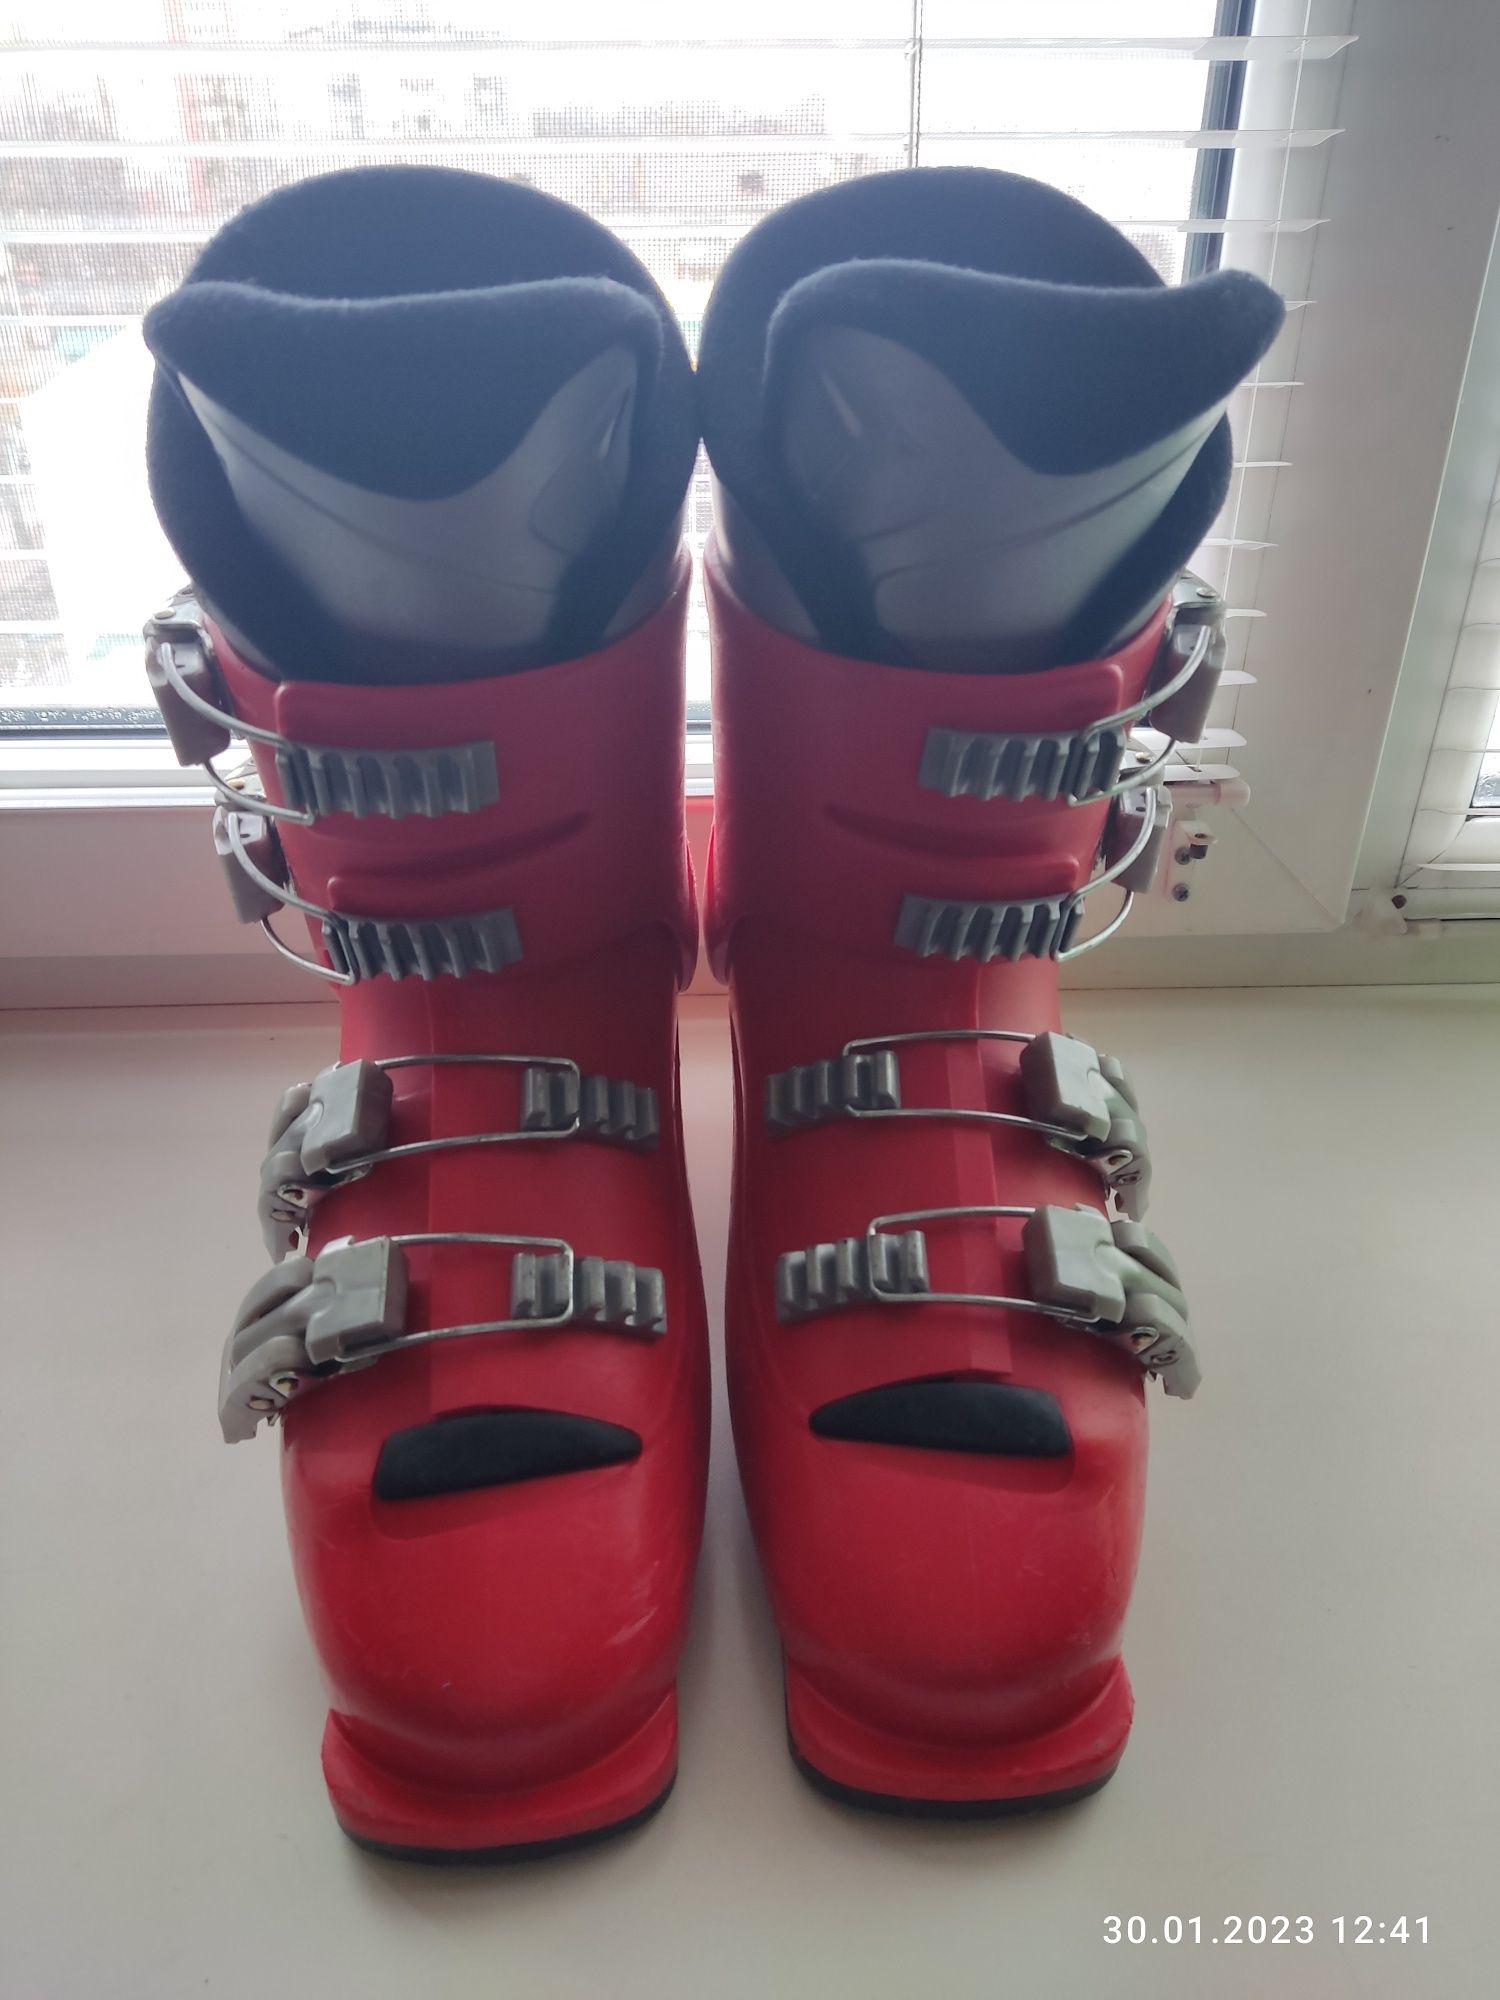 Лыжные ботинки Salomon 23.0